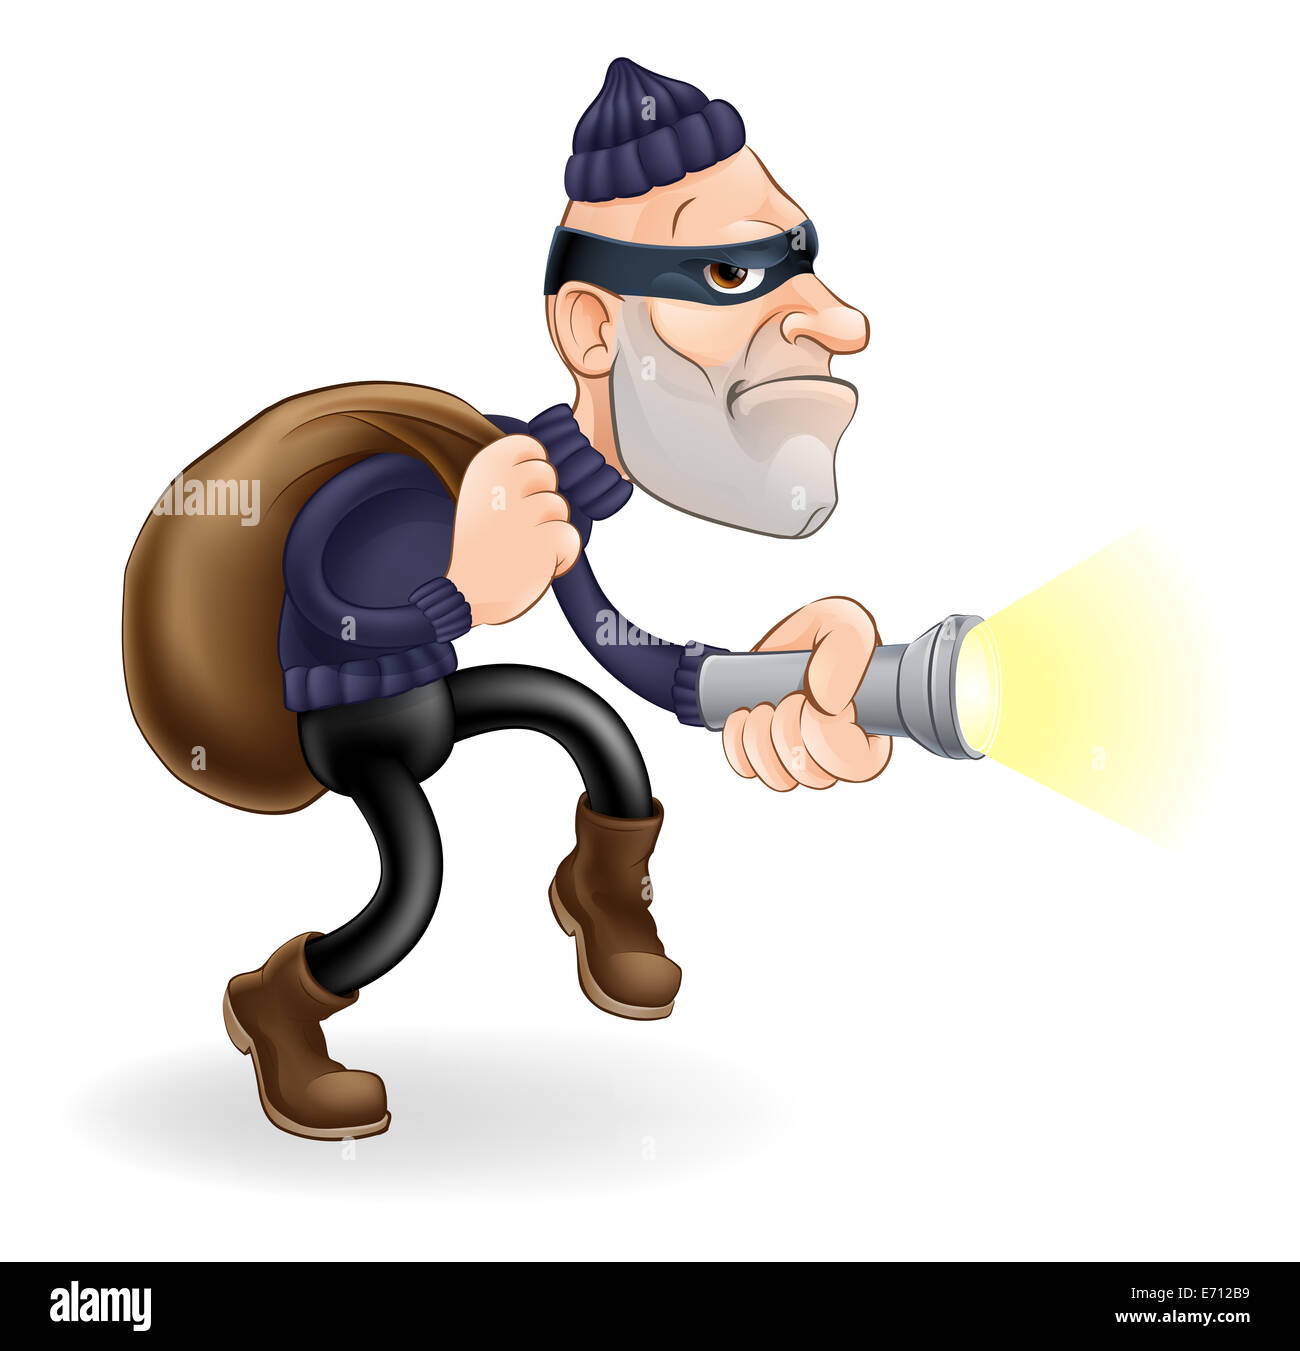 Une illustration d'un voleur ou cambrioleur personnage avec une torche et sack Banque D'Images